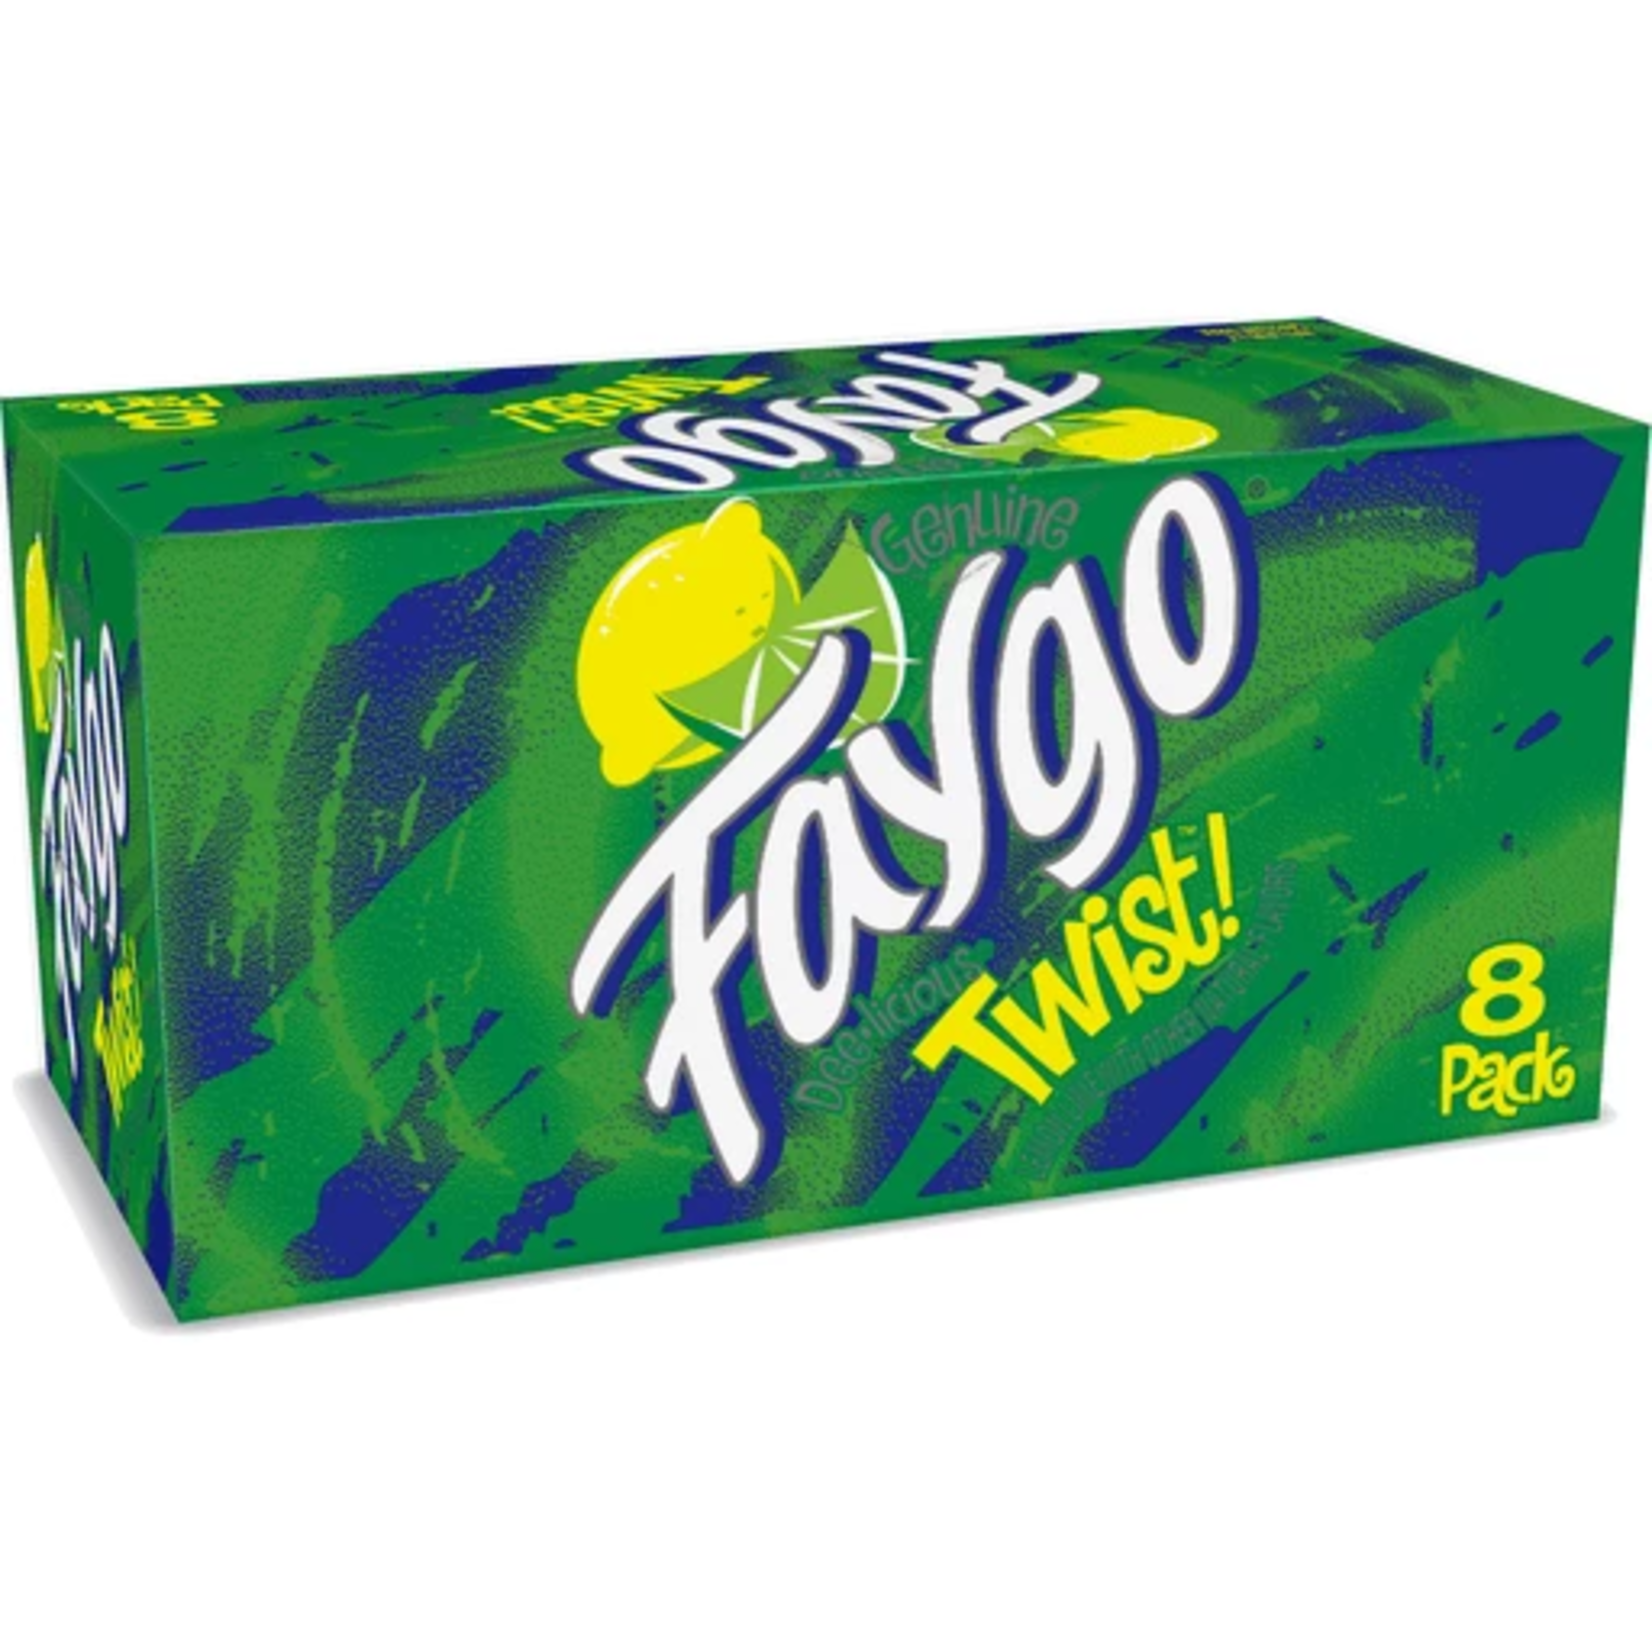 Faygo Soda Pop 8 Pack - Twist  Lemon Lime